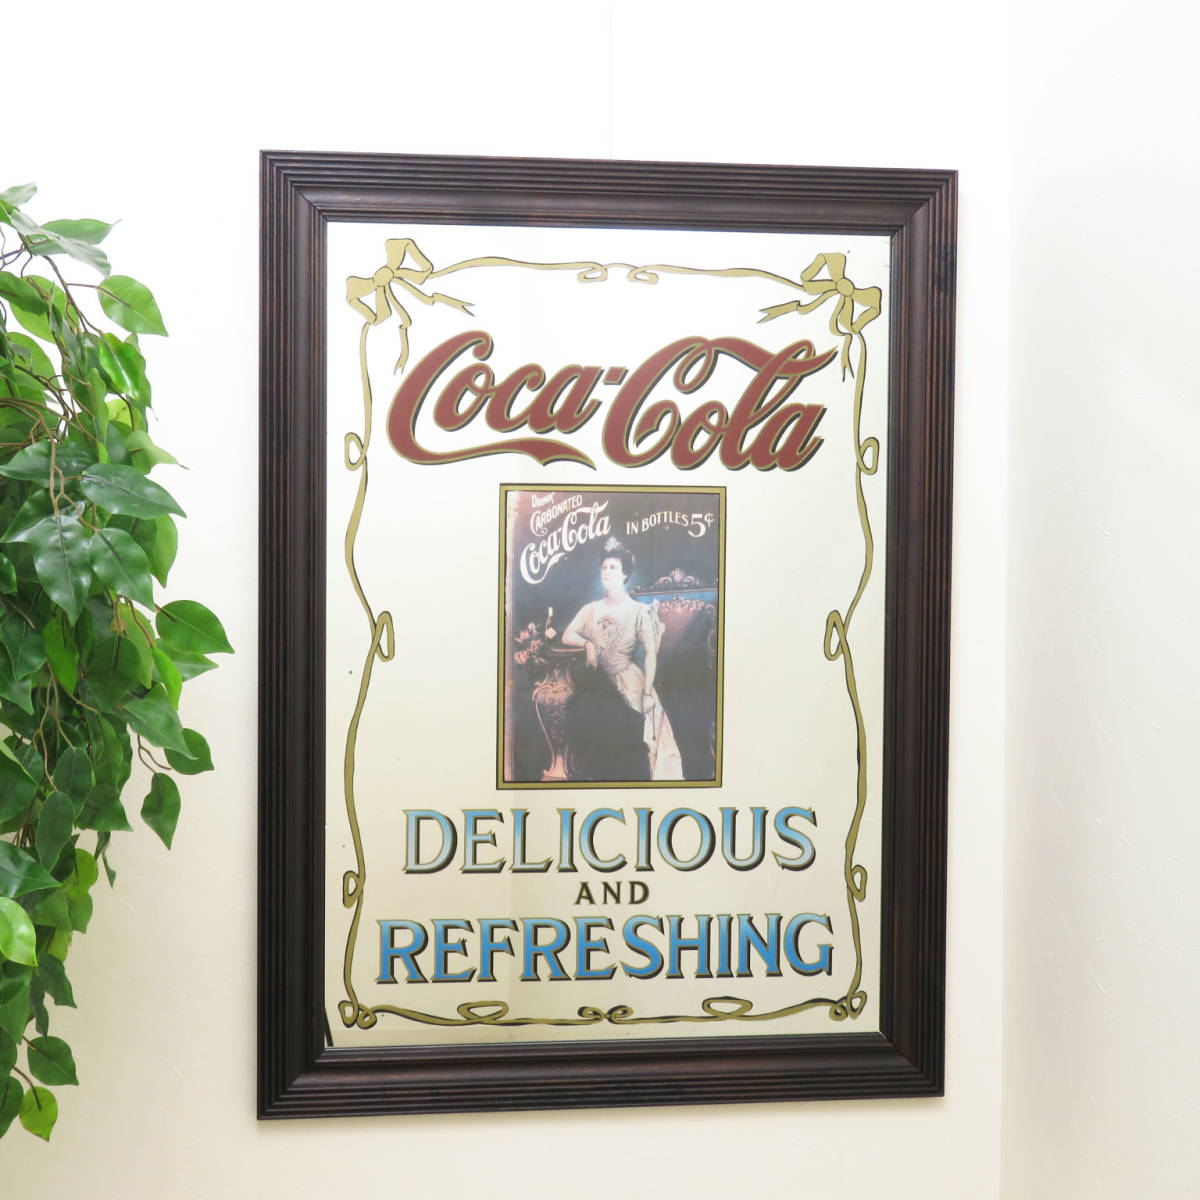 ビンテージパブミラー/コカ・コーラ Coca-Cola/特大サイズの壁掛け鏡/店舗什器/ディスプレイ/レストラン/インテリア雑貨/内装/装飾/PM-0033